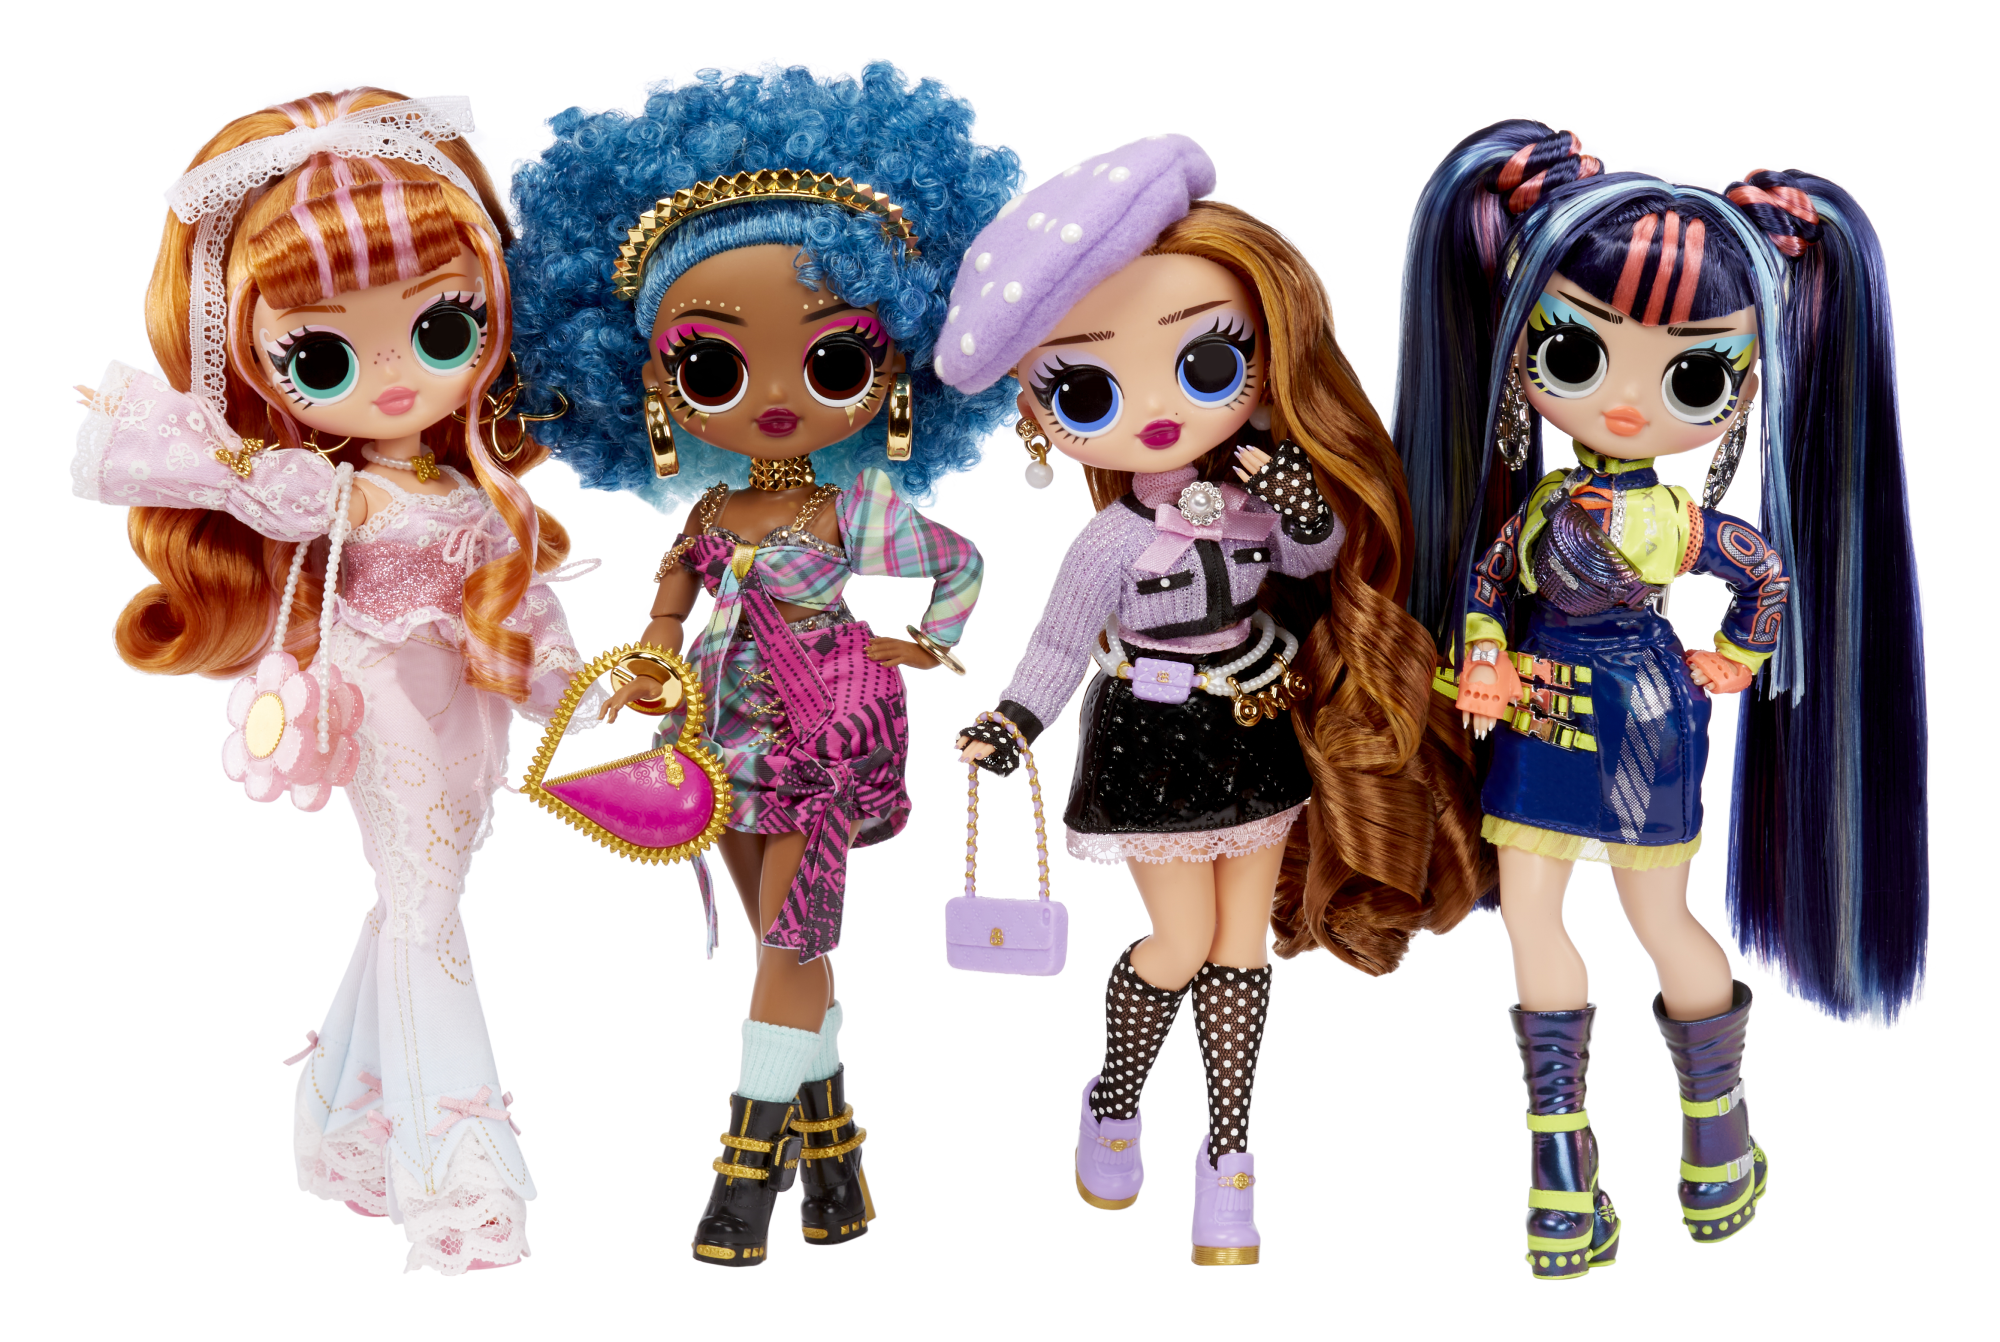 L.o.l. surprise! o.m.g. fashion doll - victory - include bambola, sorprese multiple e favolosi accessori - LOL